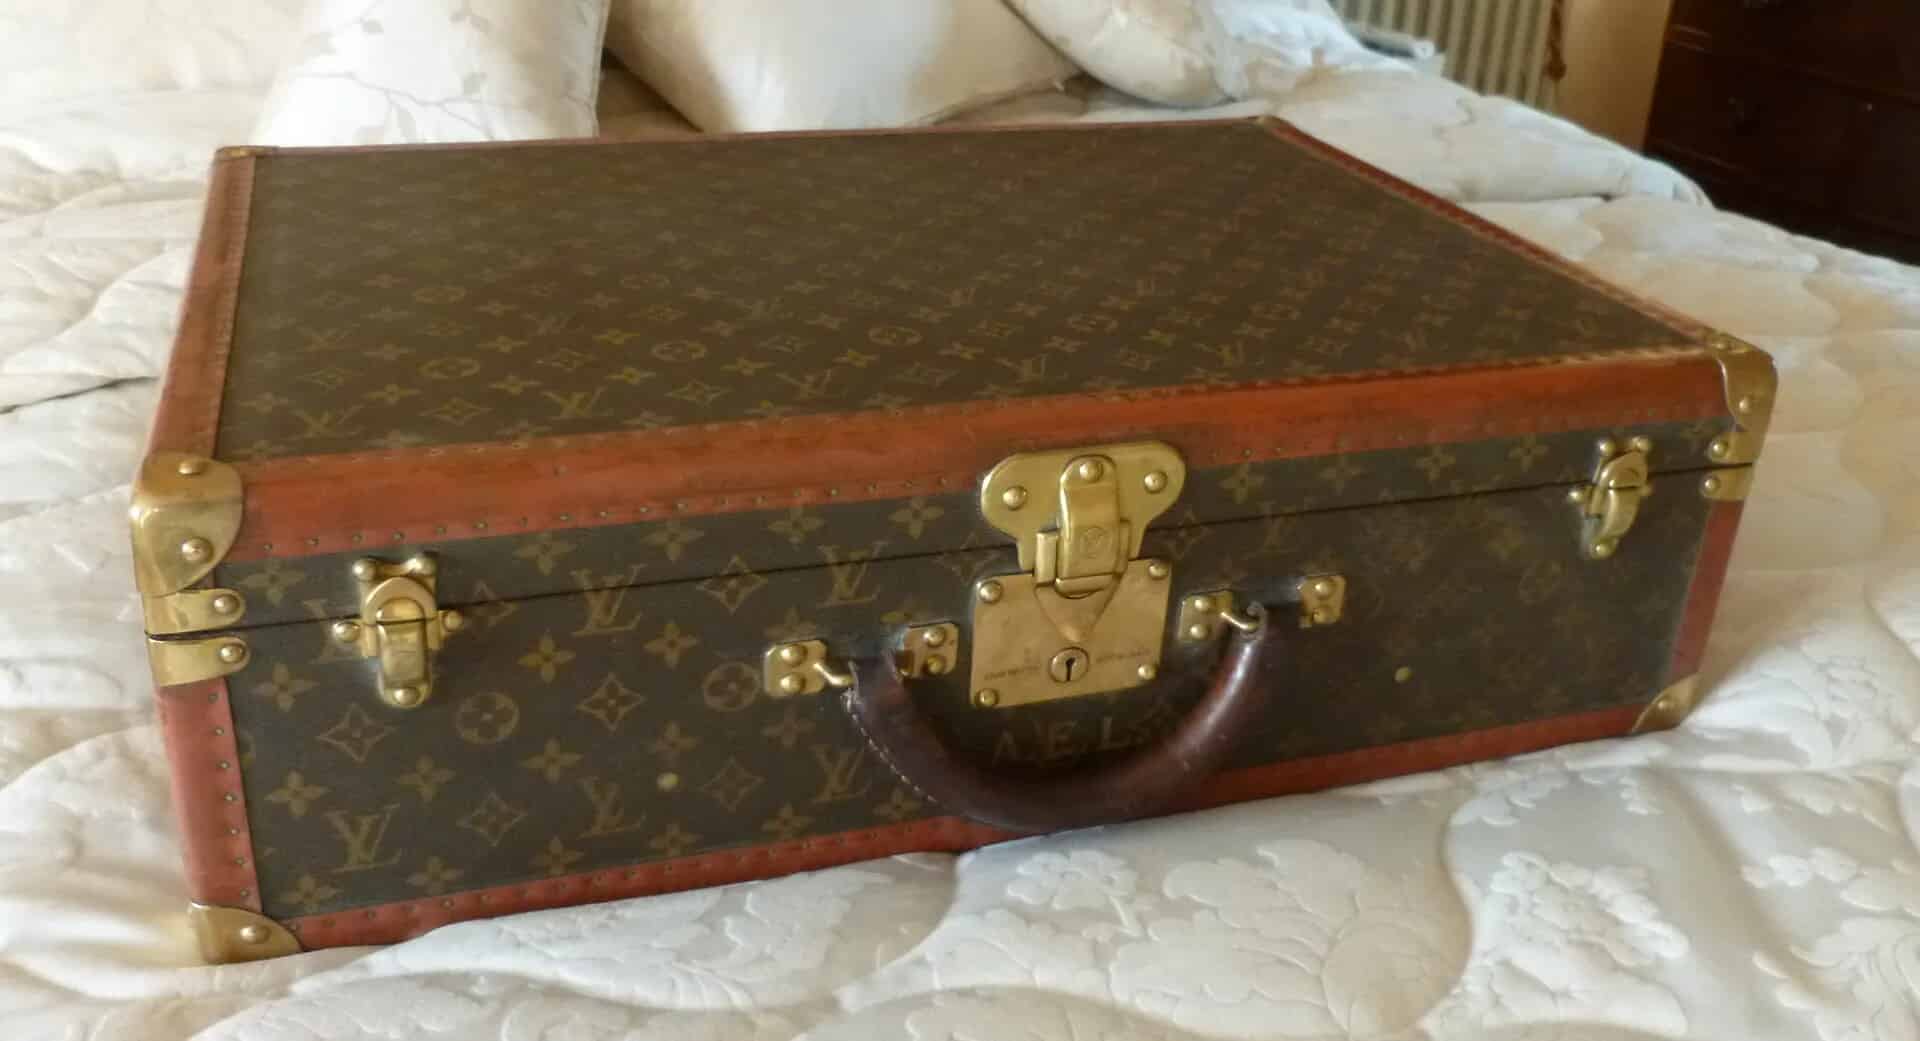 Genuine Vintage Louis Vuitton Suitcase